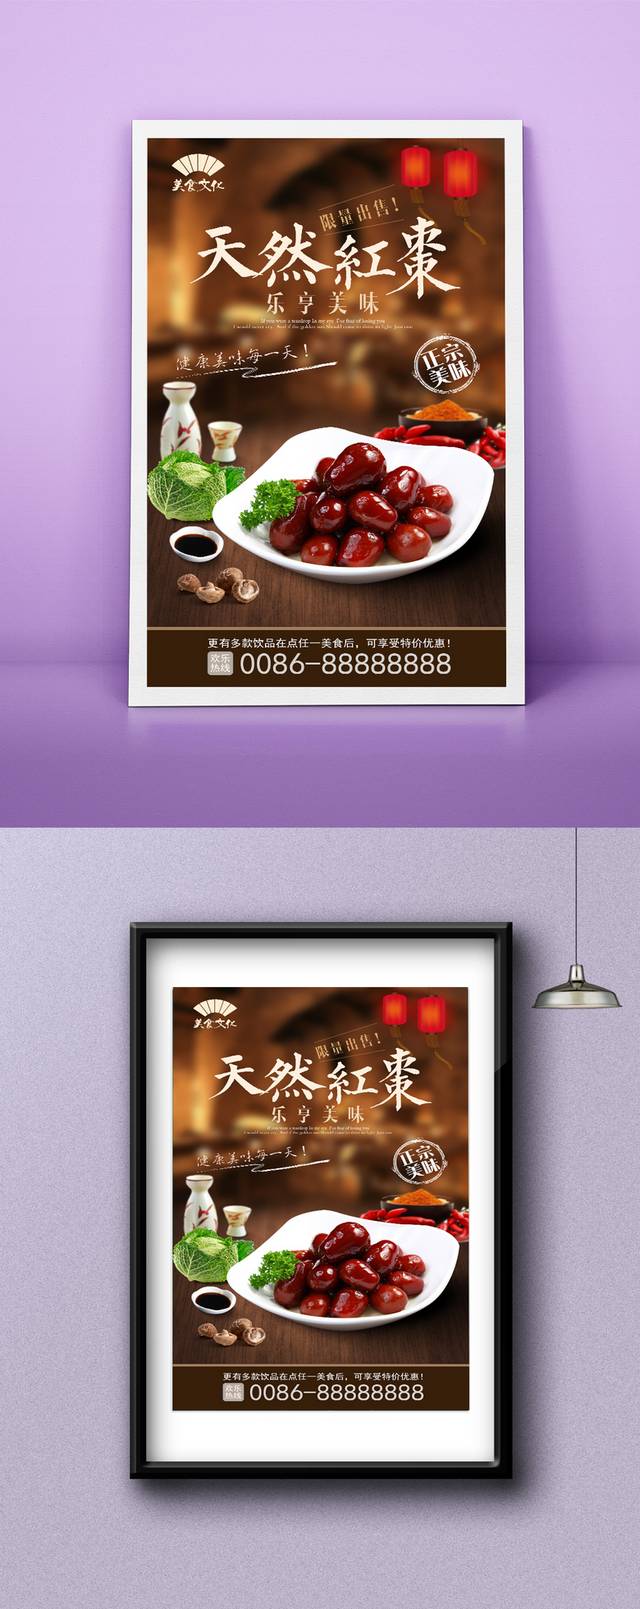 高档红枣促销海报设计